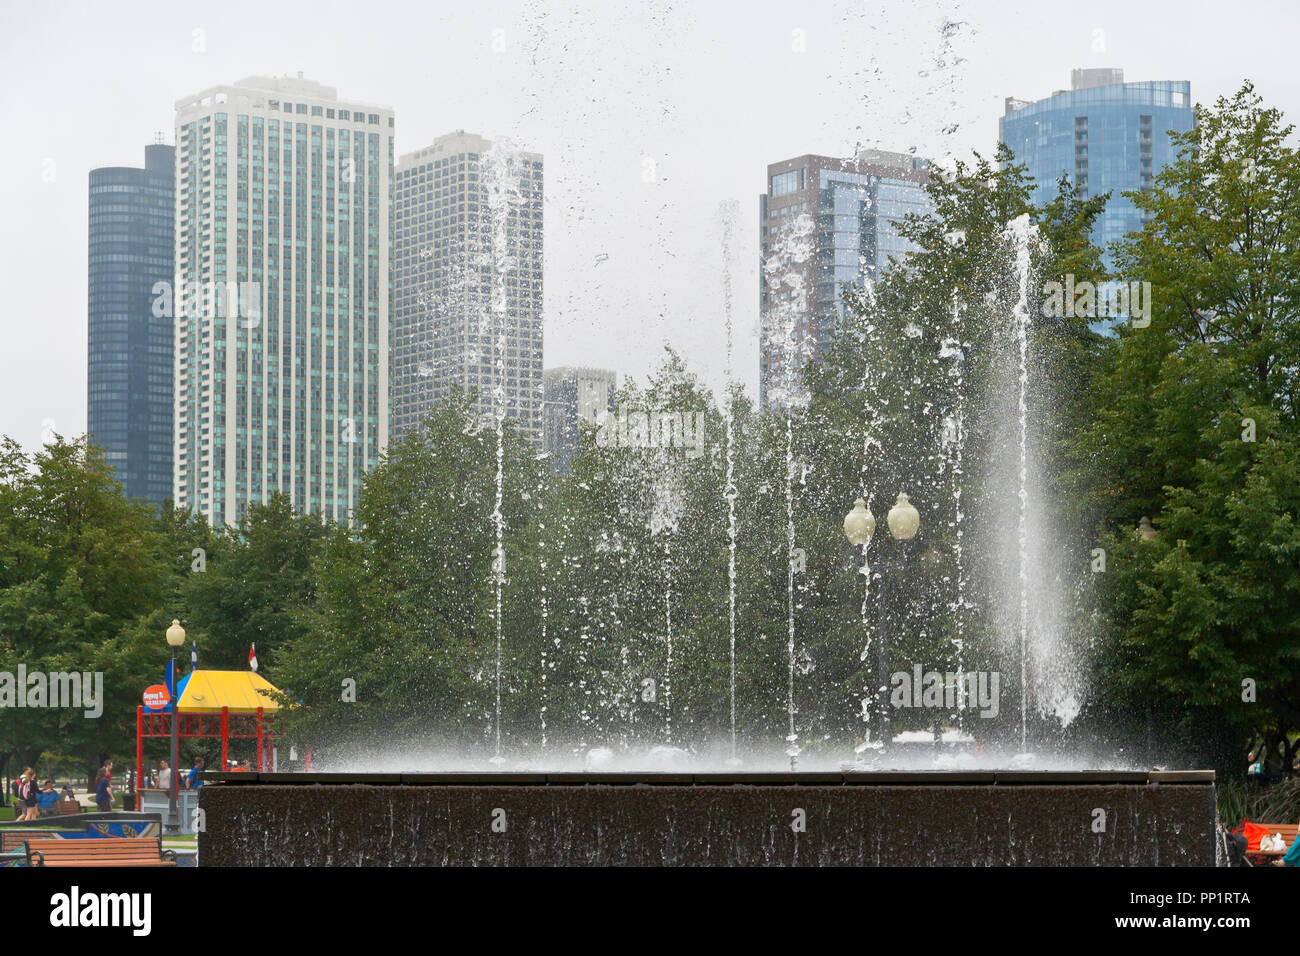 CHICAGO - le 28 août : des gouttes d'eau de la danse comme le parc de la fontaine de la passerelle joue en face de fog-enshrouded gratte-ciel par un après-midi d'été, le 2 août 2013 Banque D'Images